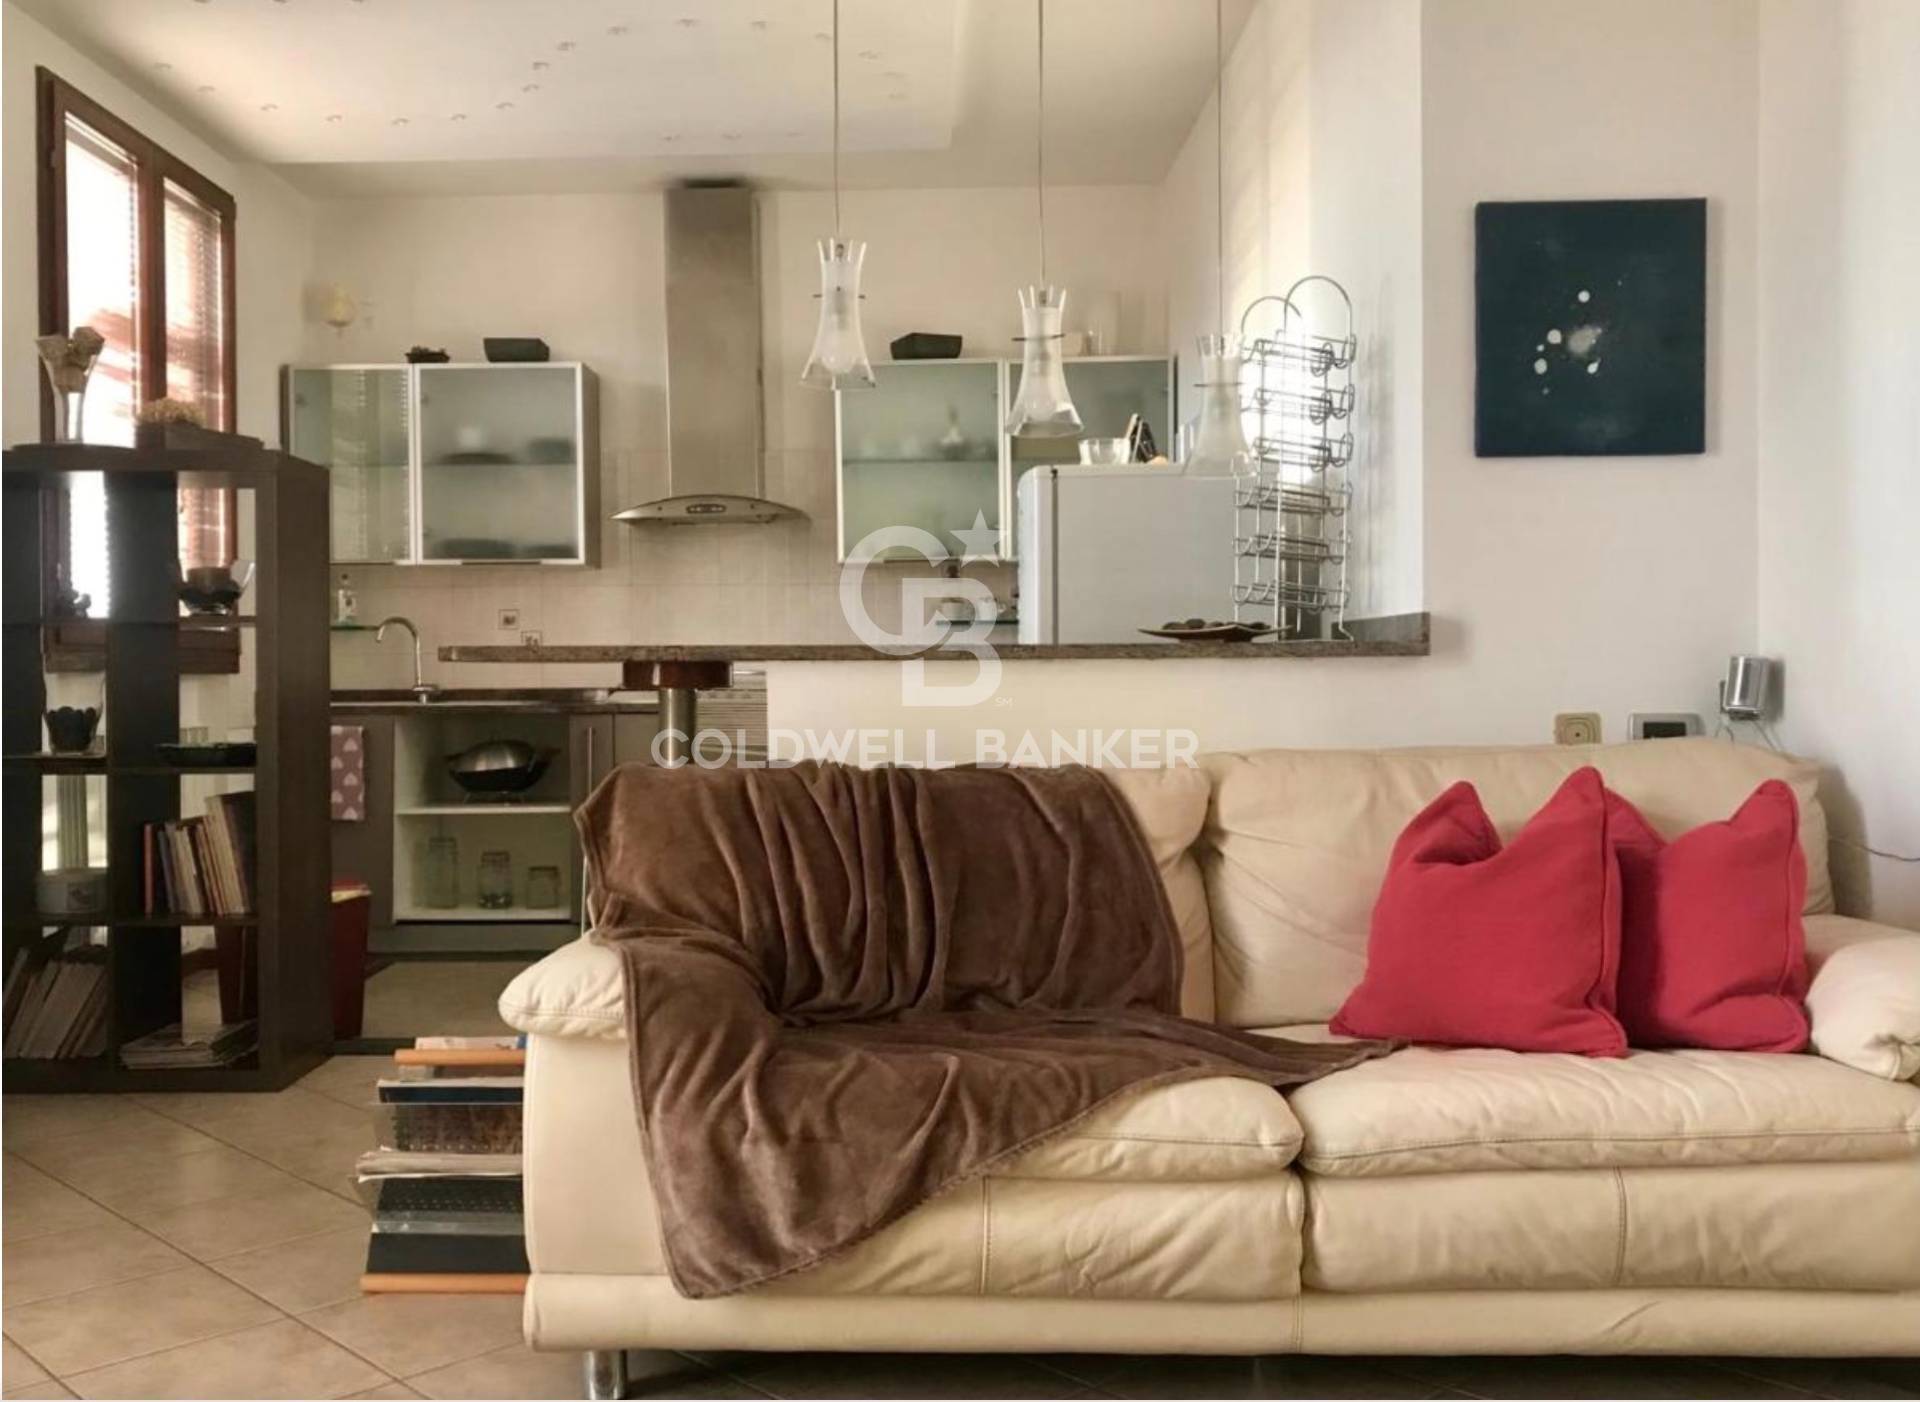 Appartamento in vendita a Cavazzona, Castelfranco Emilia (MO)